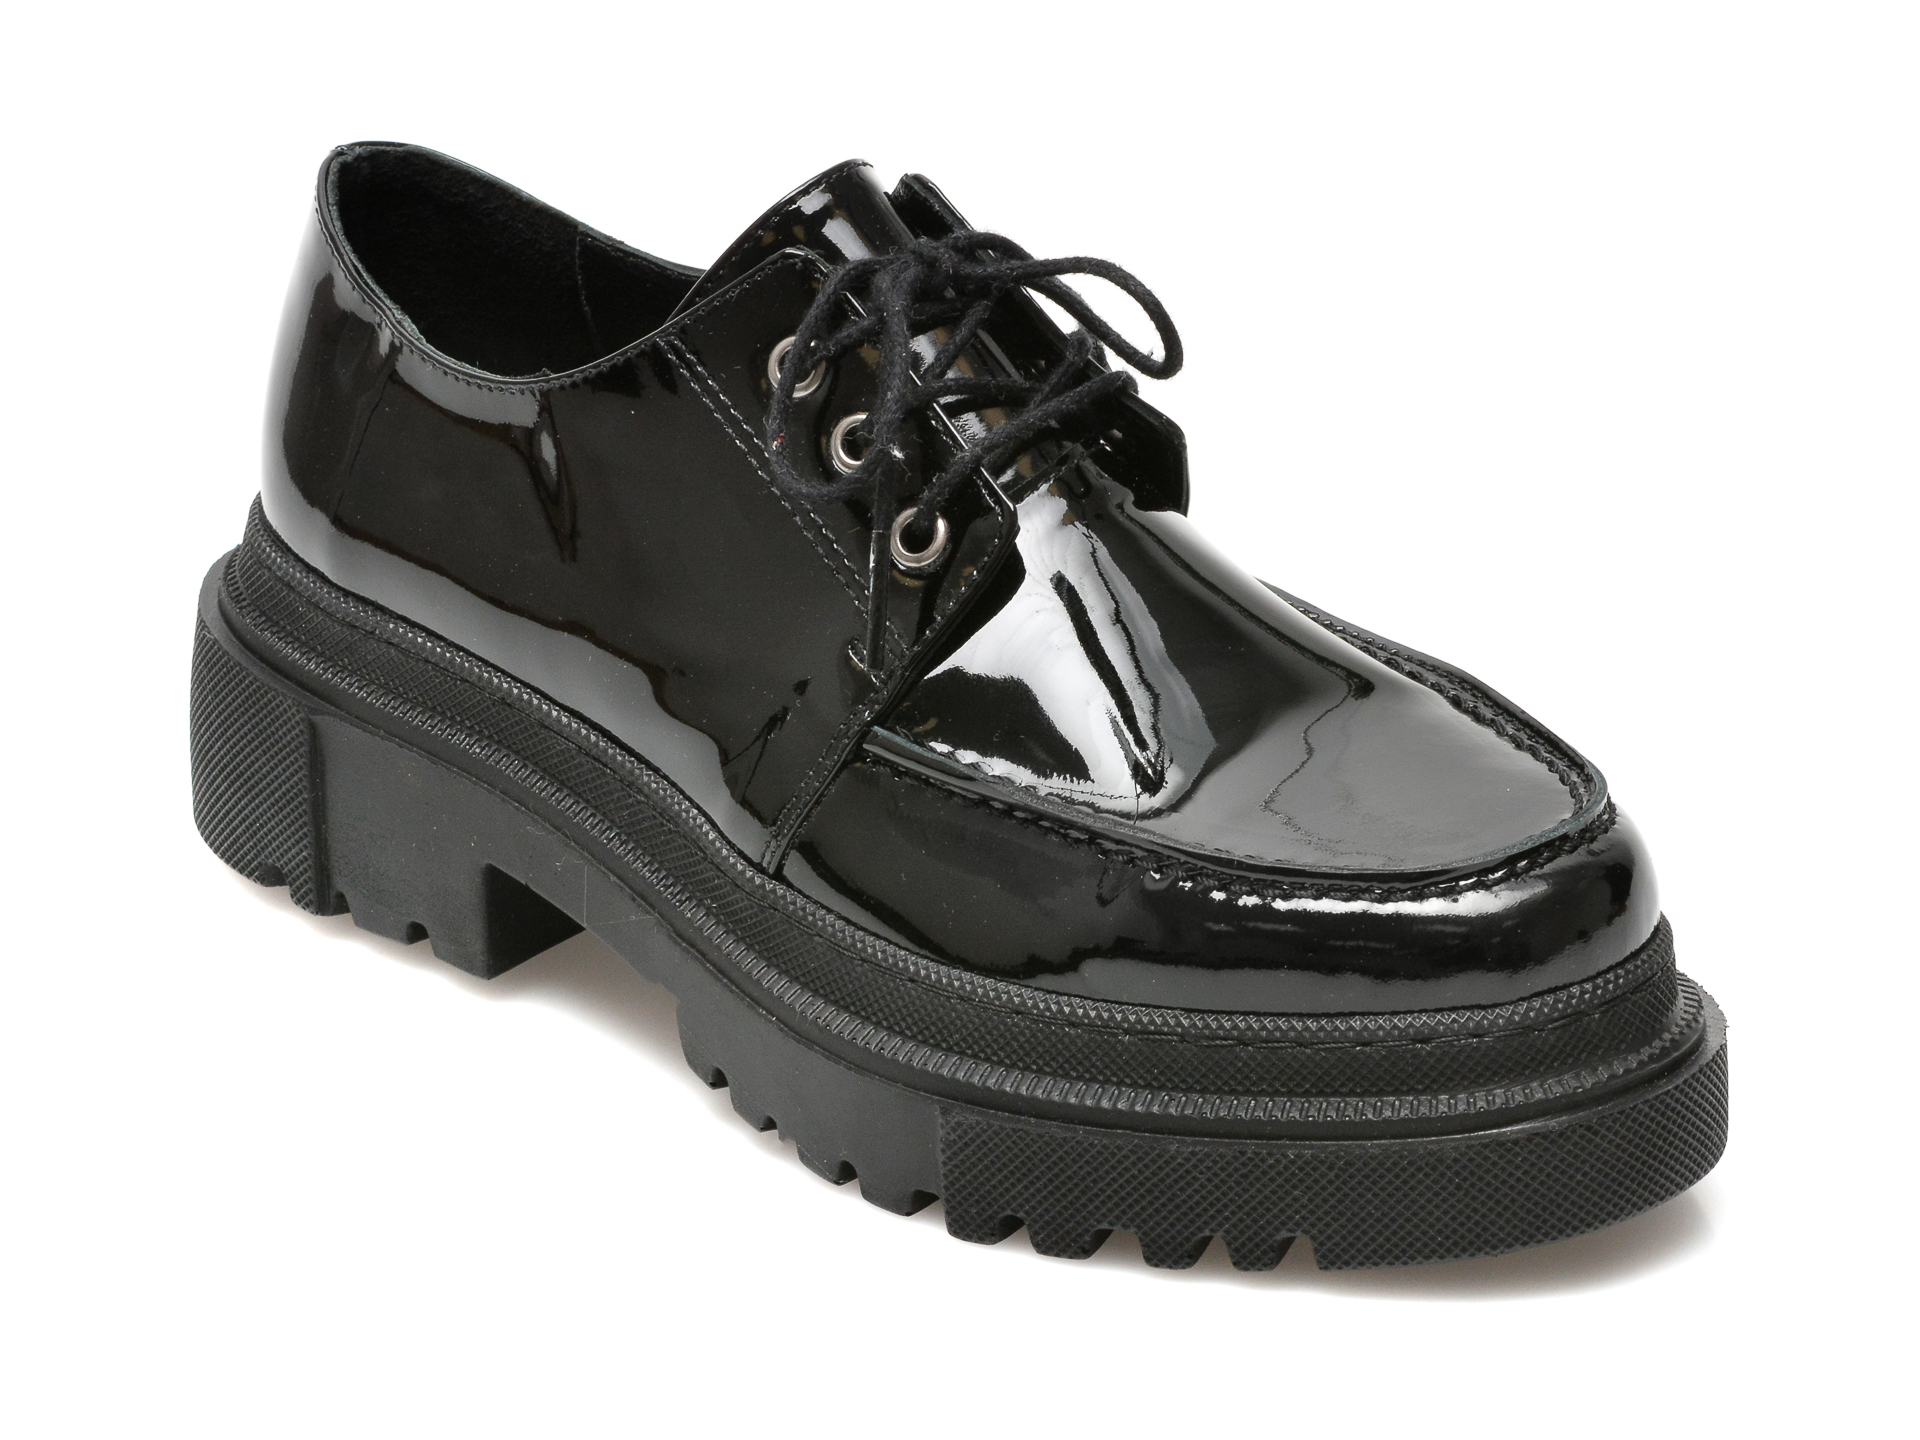 Pantofi FLAVIA PASSINI negri, 21900, din piele naturala lacuita Flavia Passini